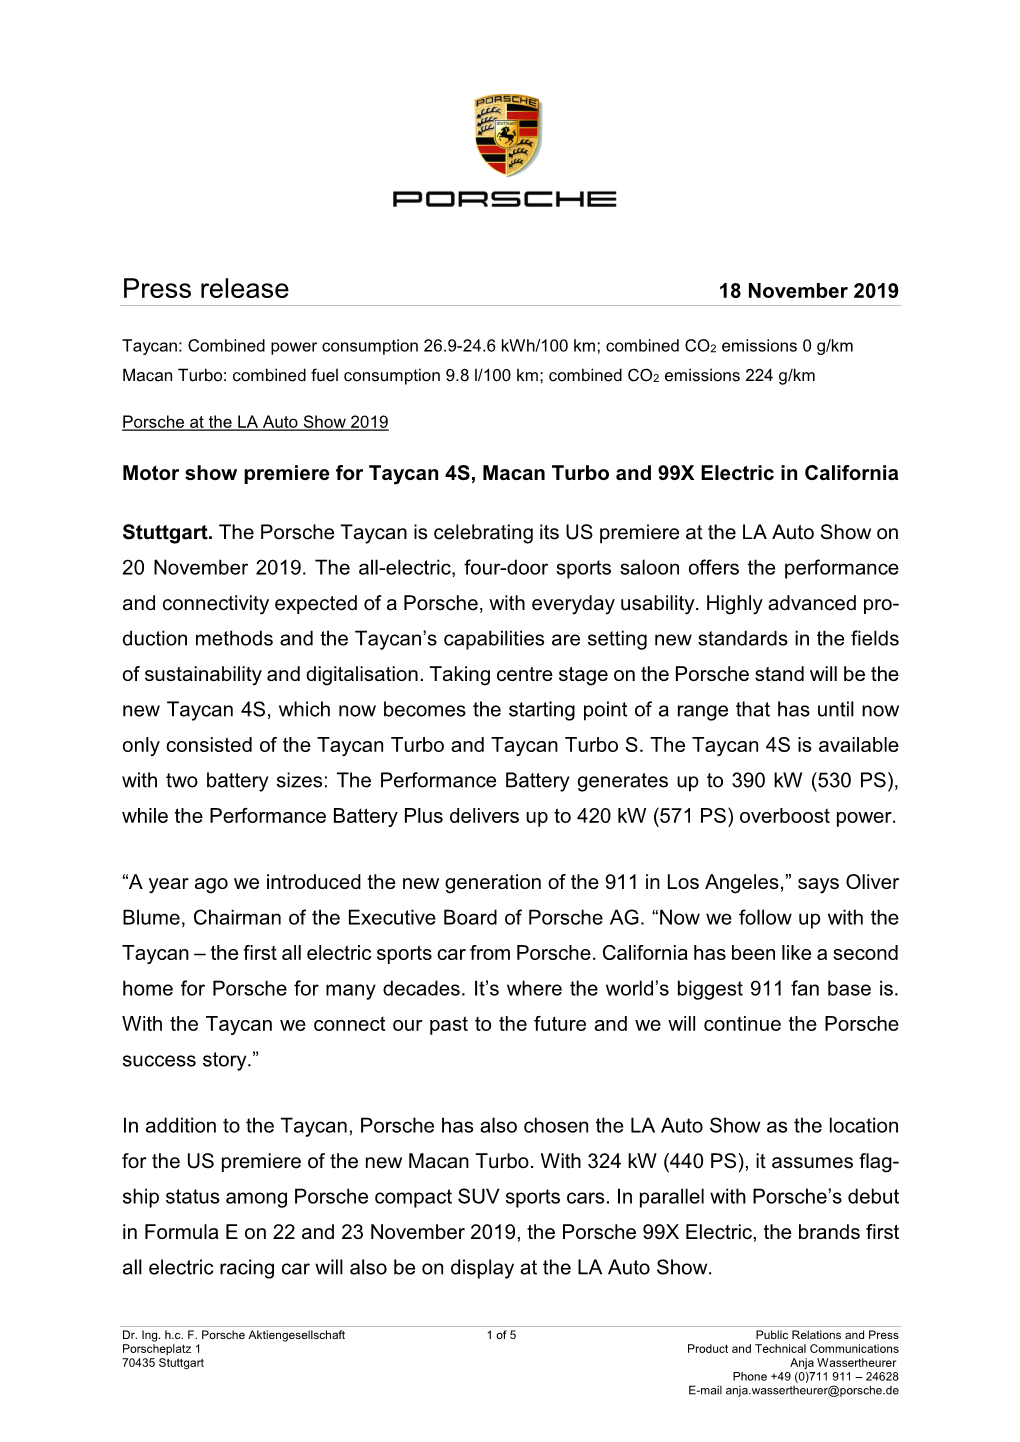 Press Release 18 November 2019